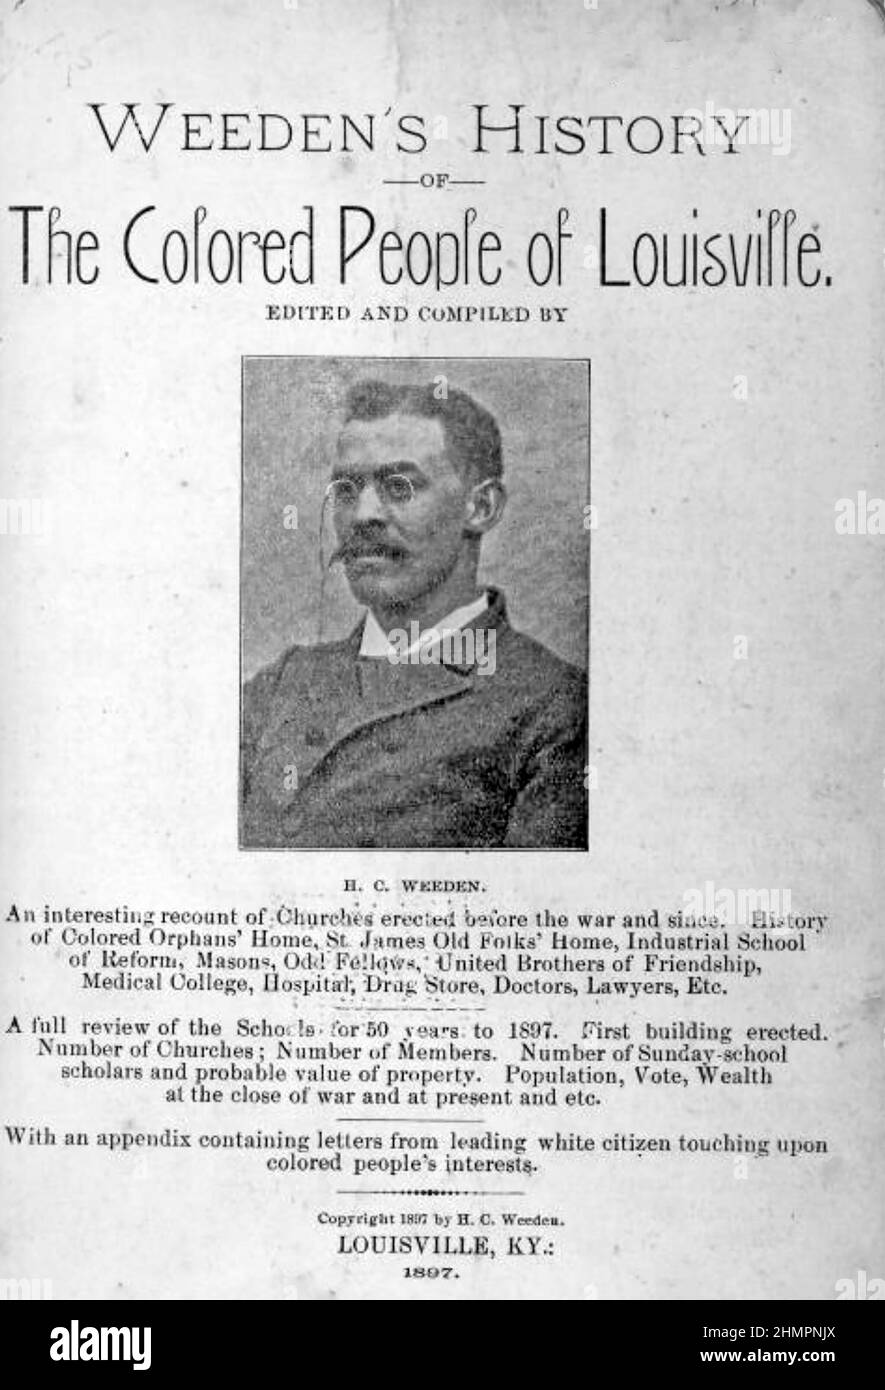 HENRY CLAY WEEDON page titre de son histoire des personnes colorées de Louisville, 1897 Banque D'Images